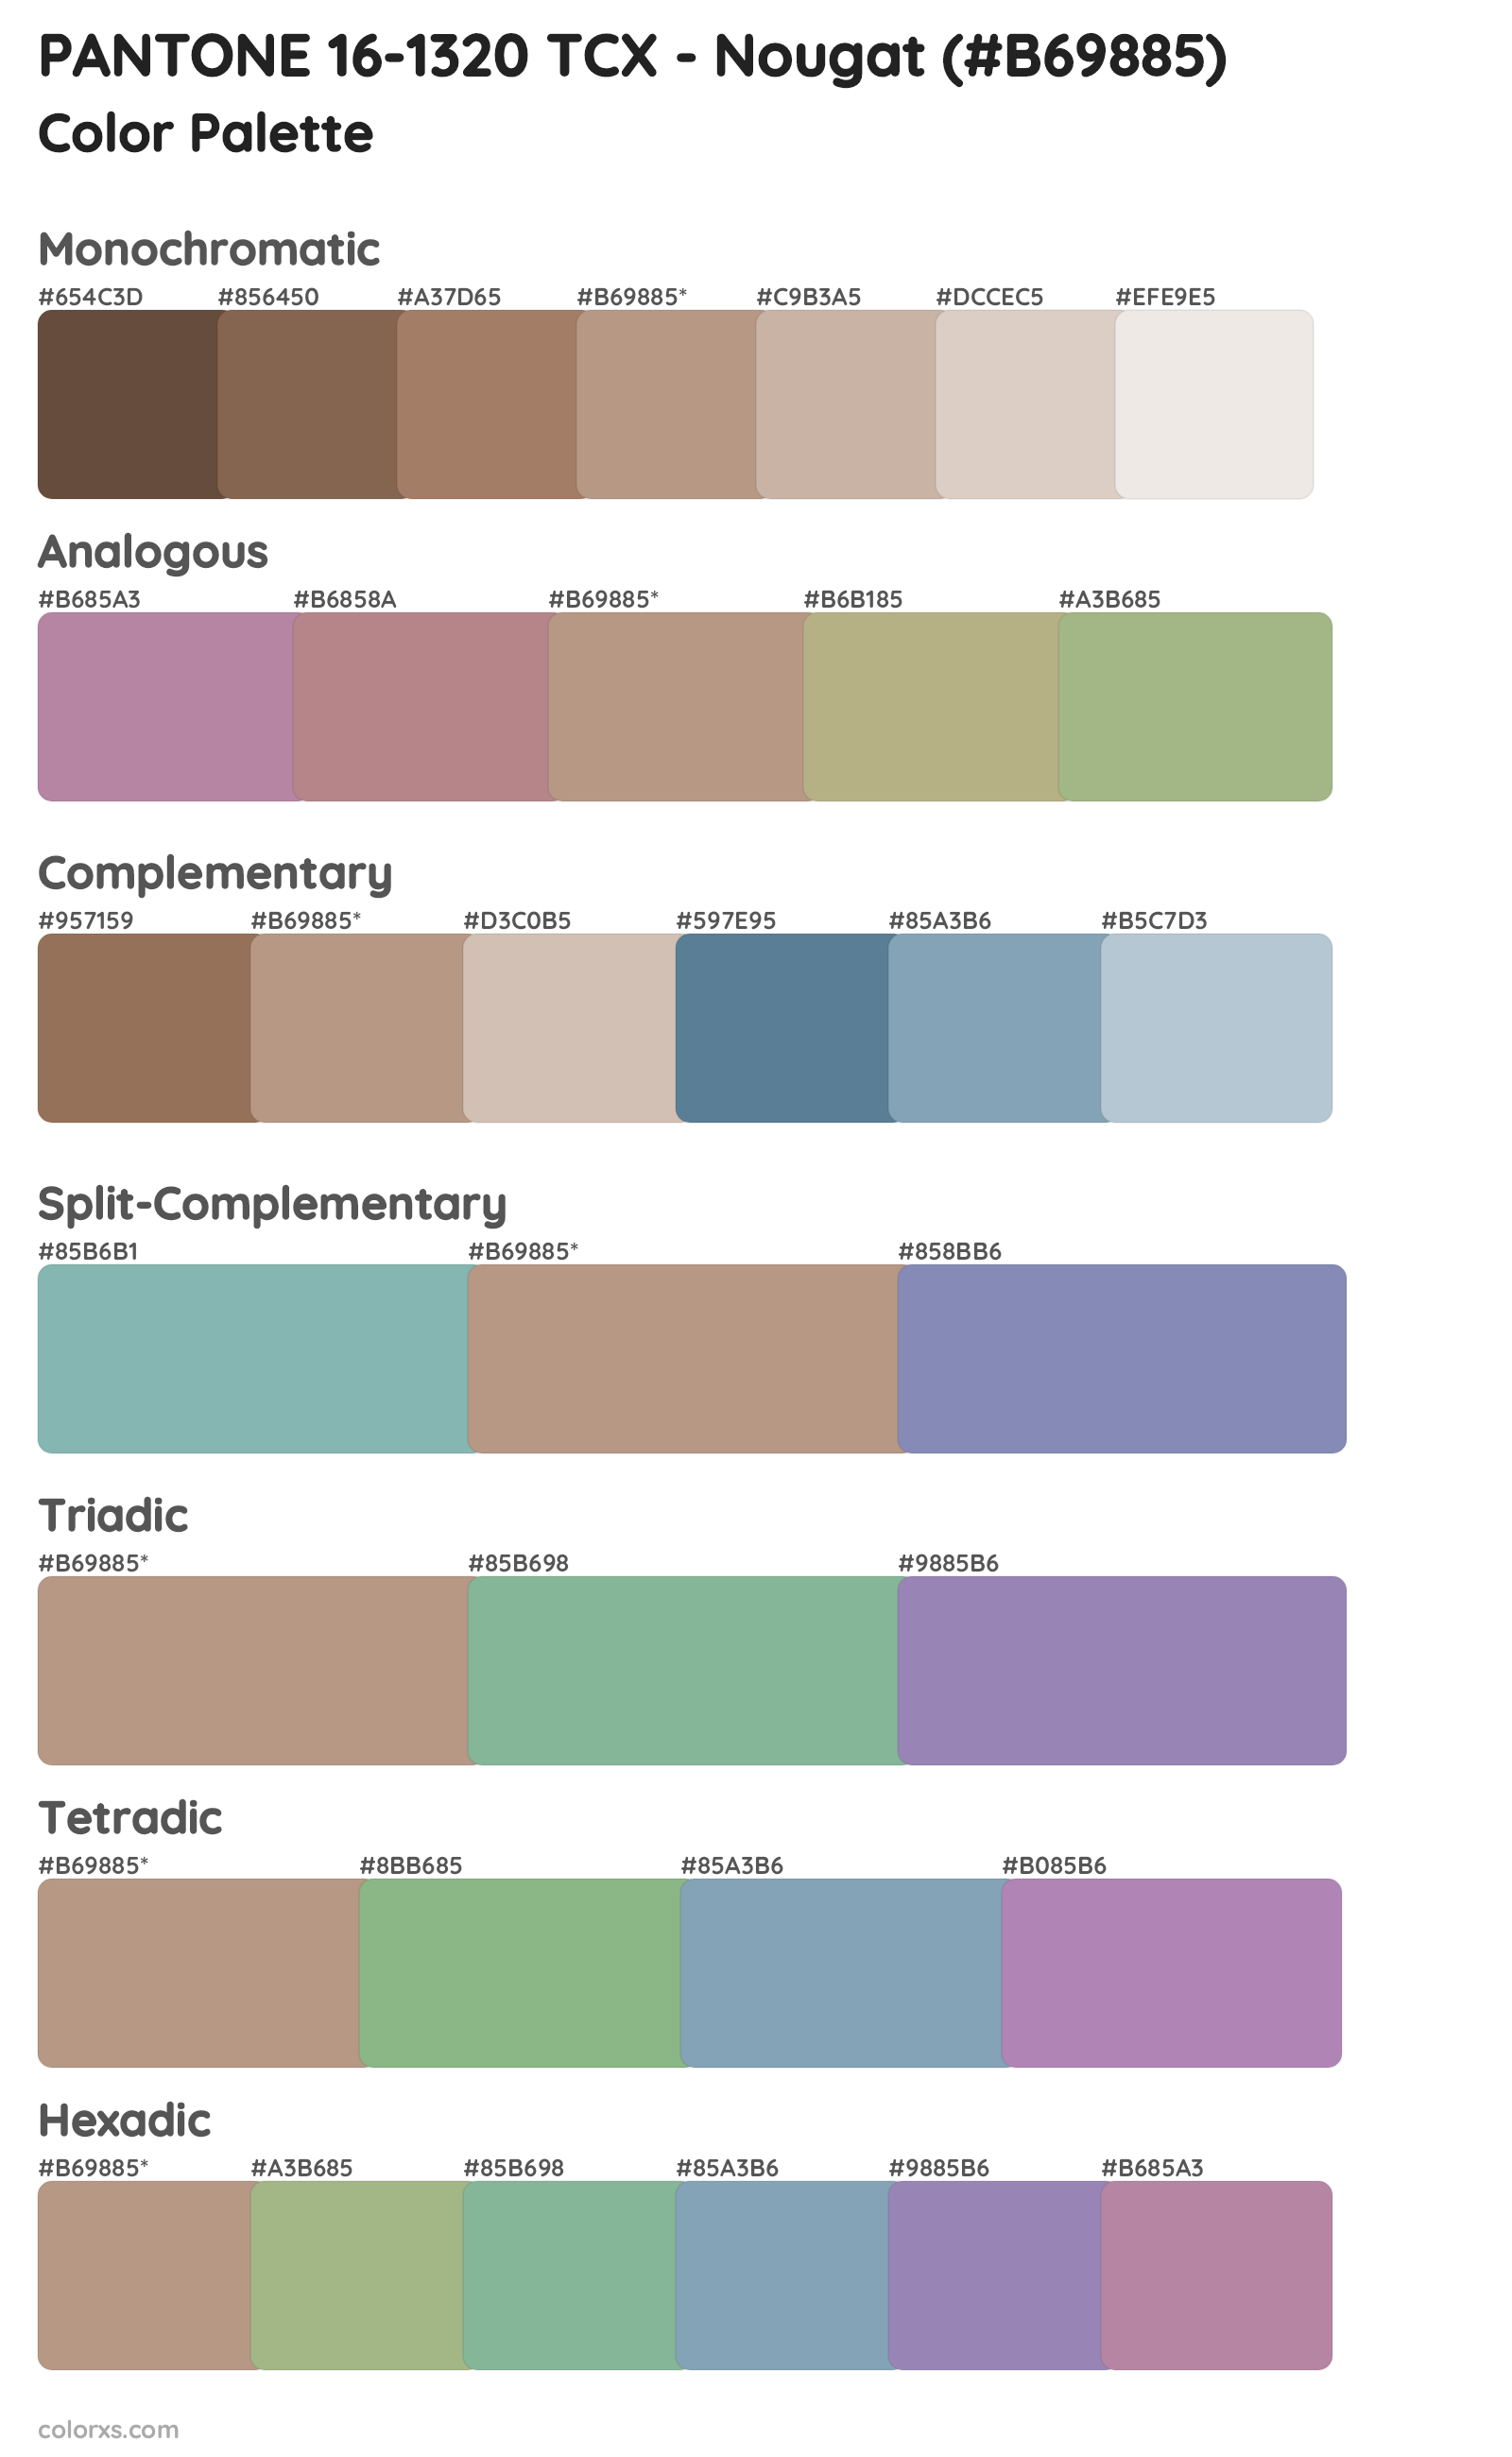 PANTONE 16-1320 TCX - Nougat Color Scheme Palettes